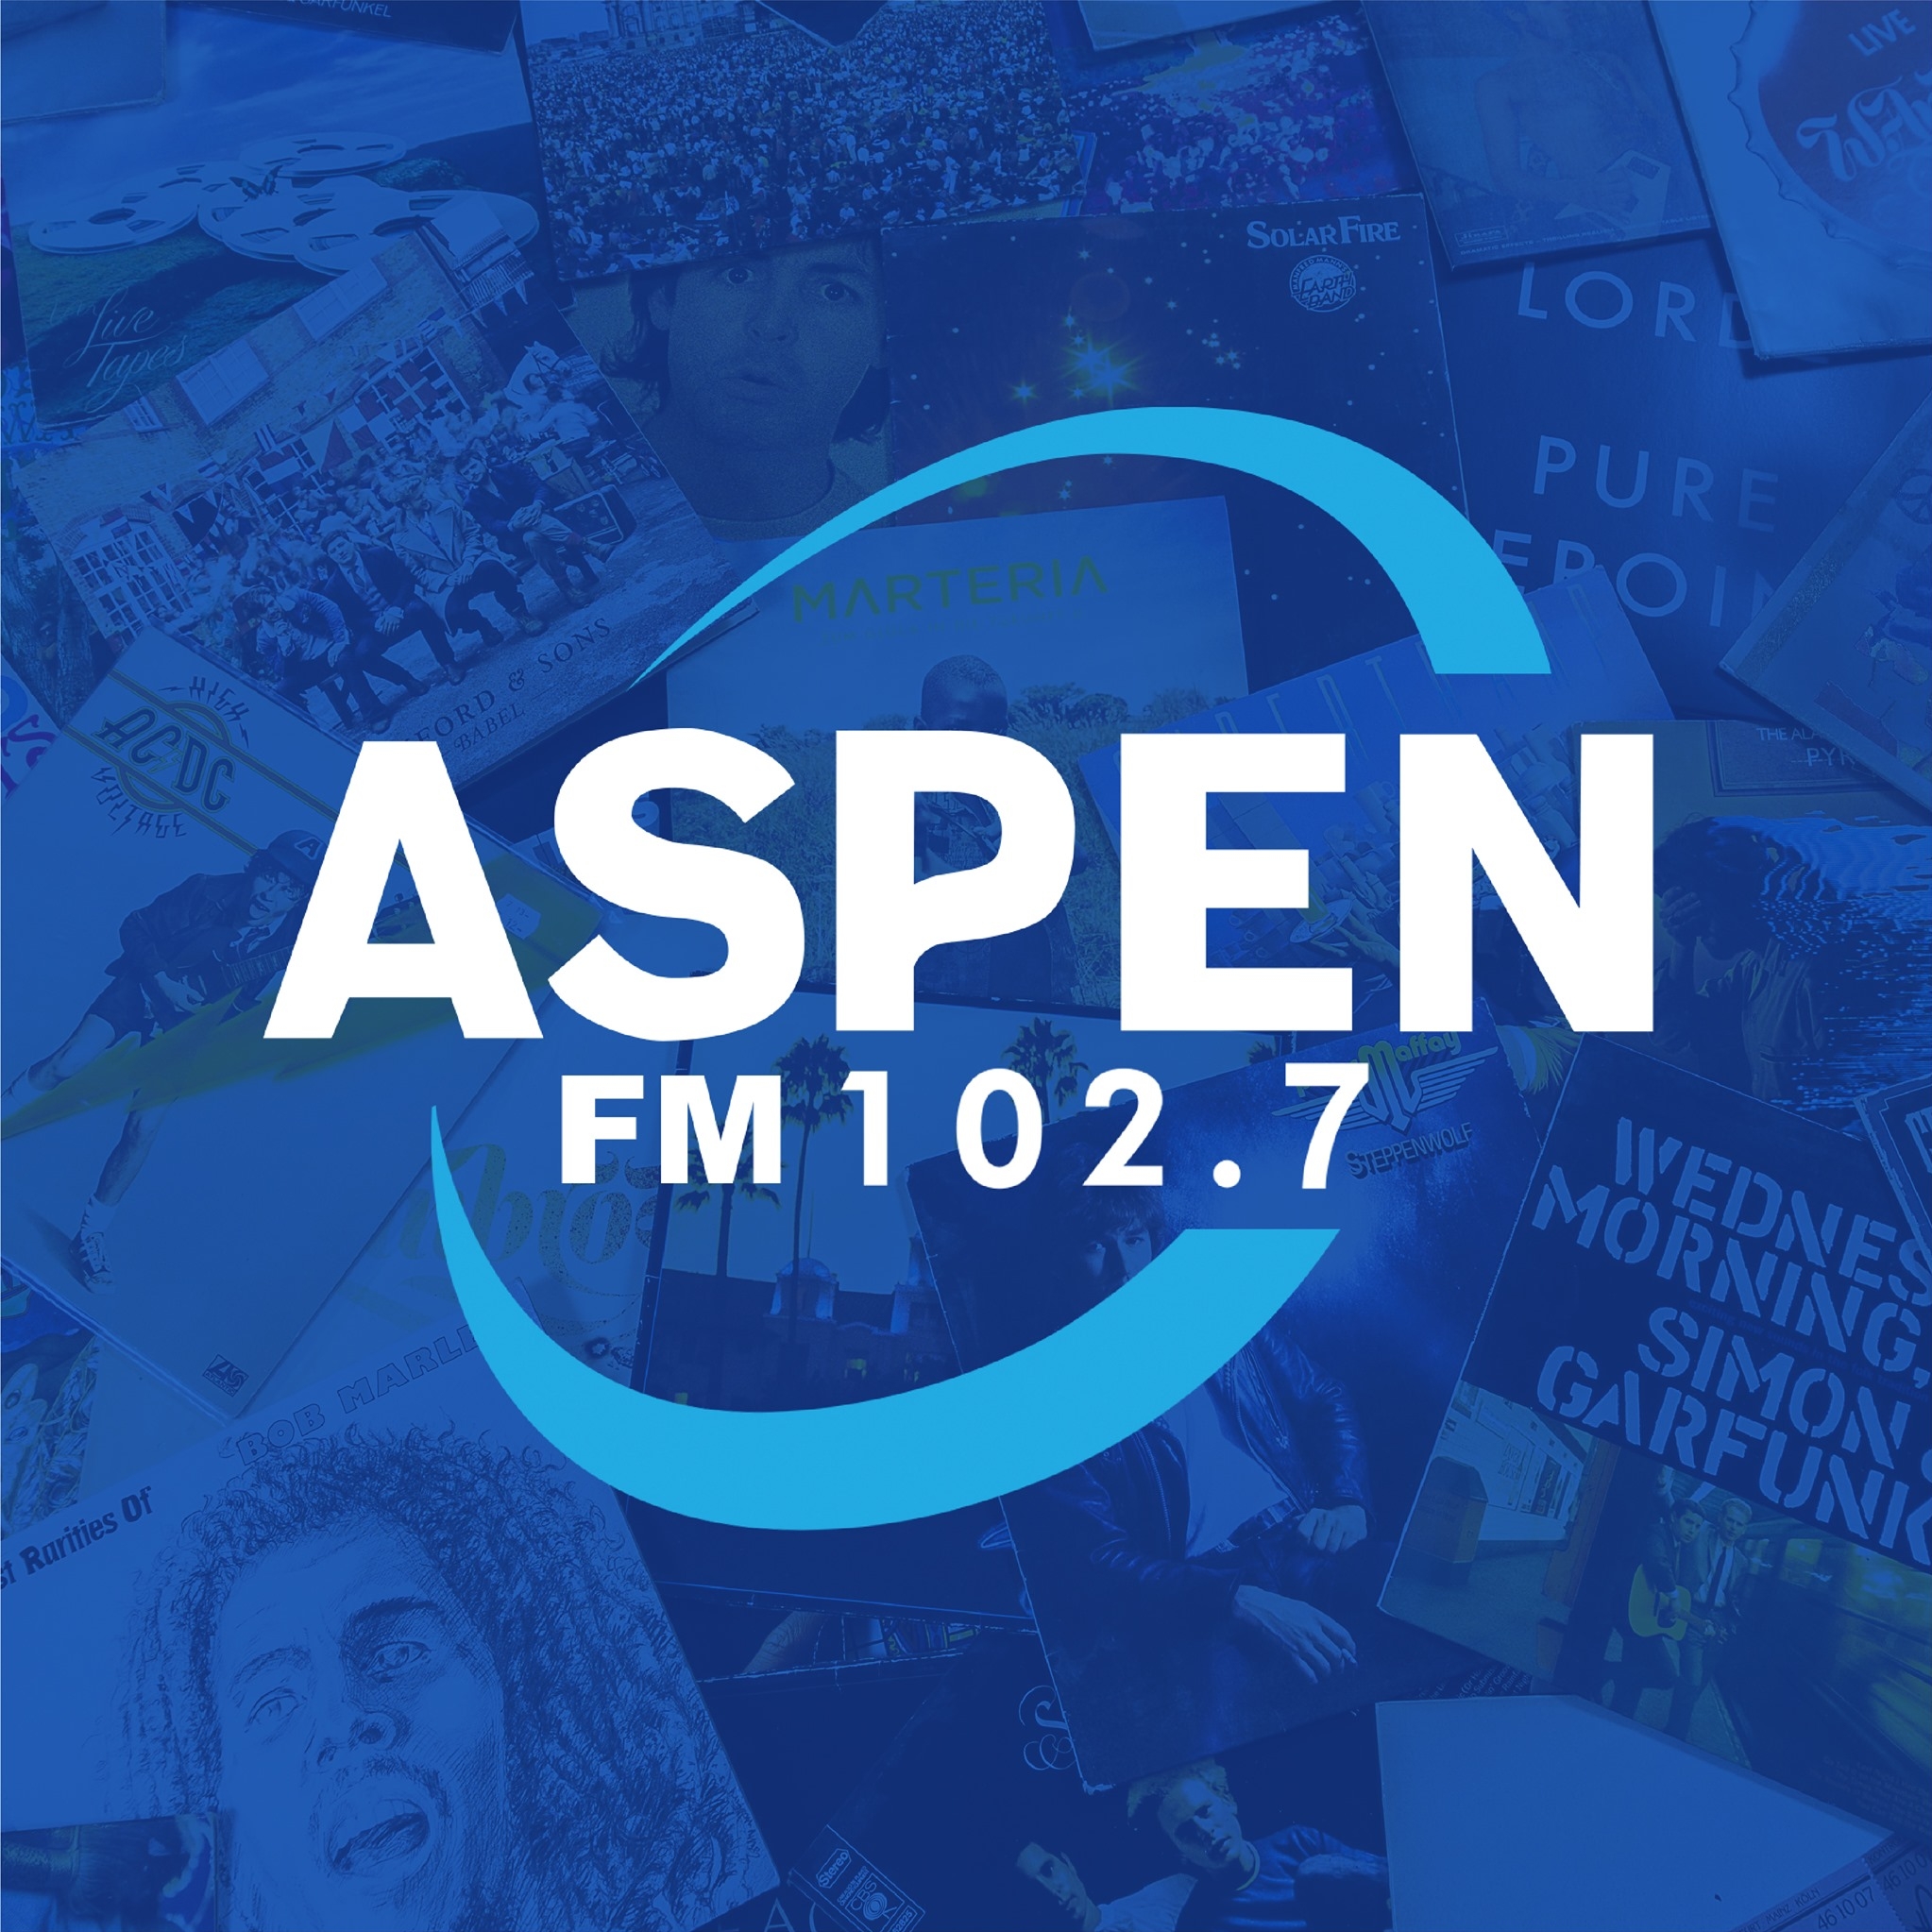 Aspen FM 102.7